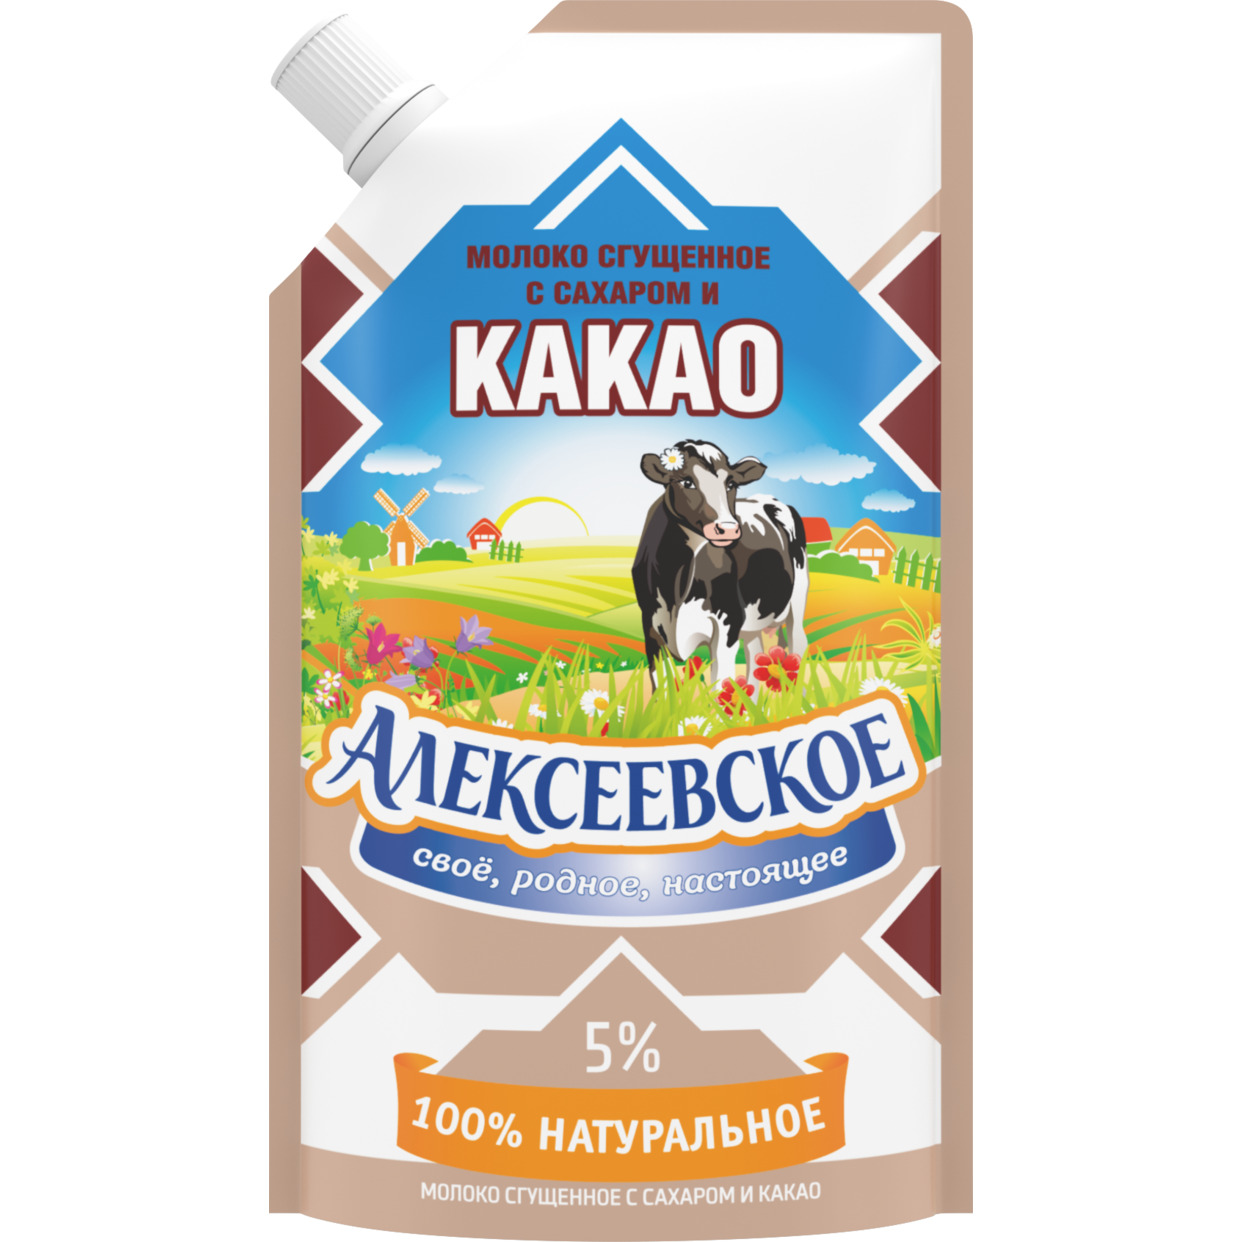 Молоко сгущенное, с какао, Алексеевское, 5%, 270 г